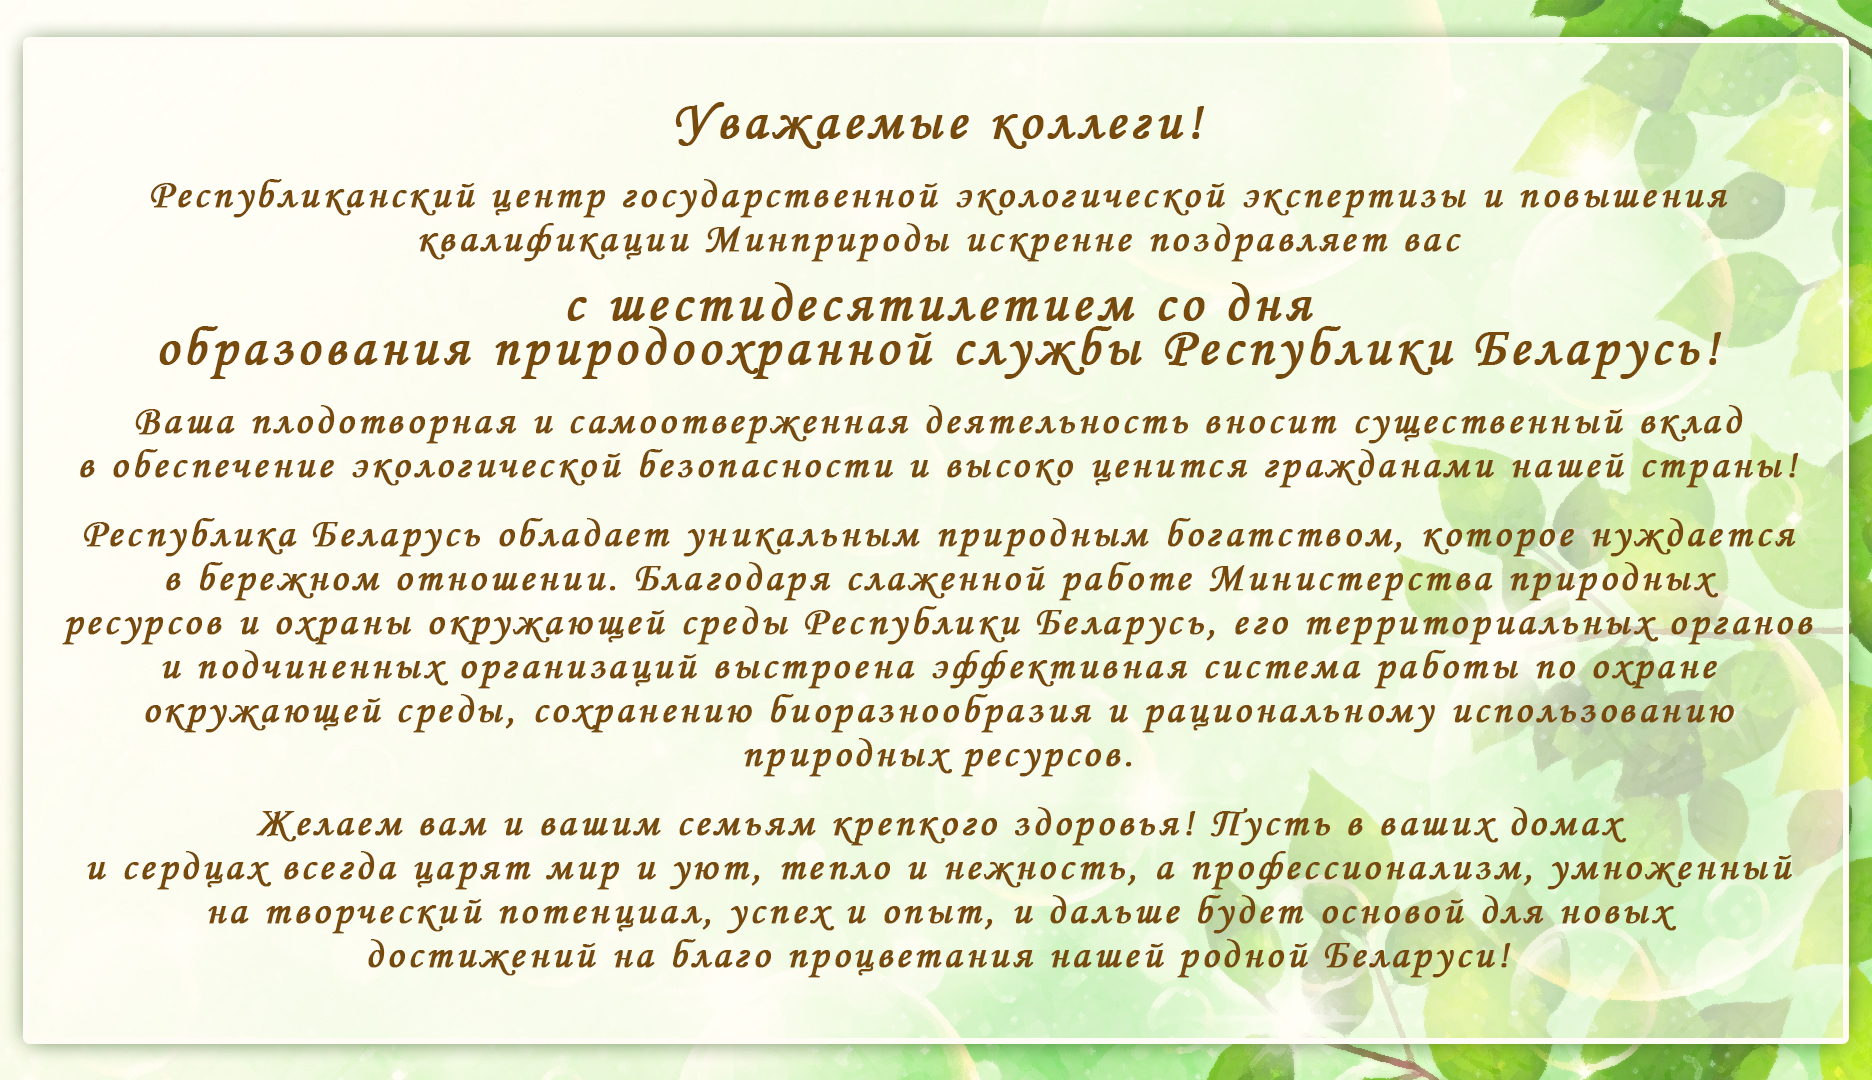 С шестидесятилетием со дня образования природоохранной службы Республики Беларусь.jpg